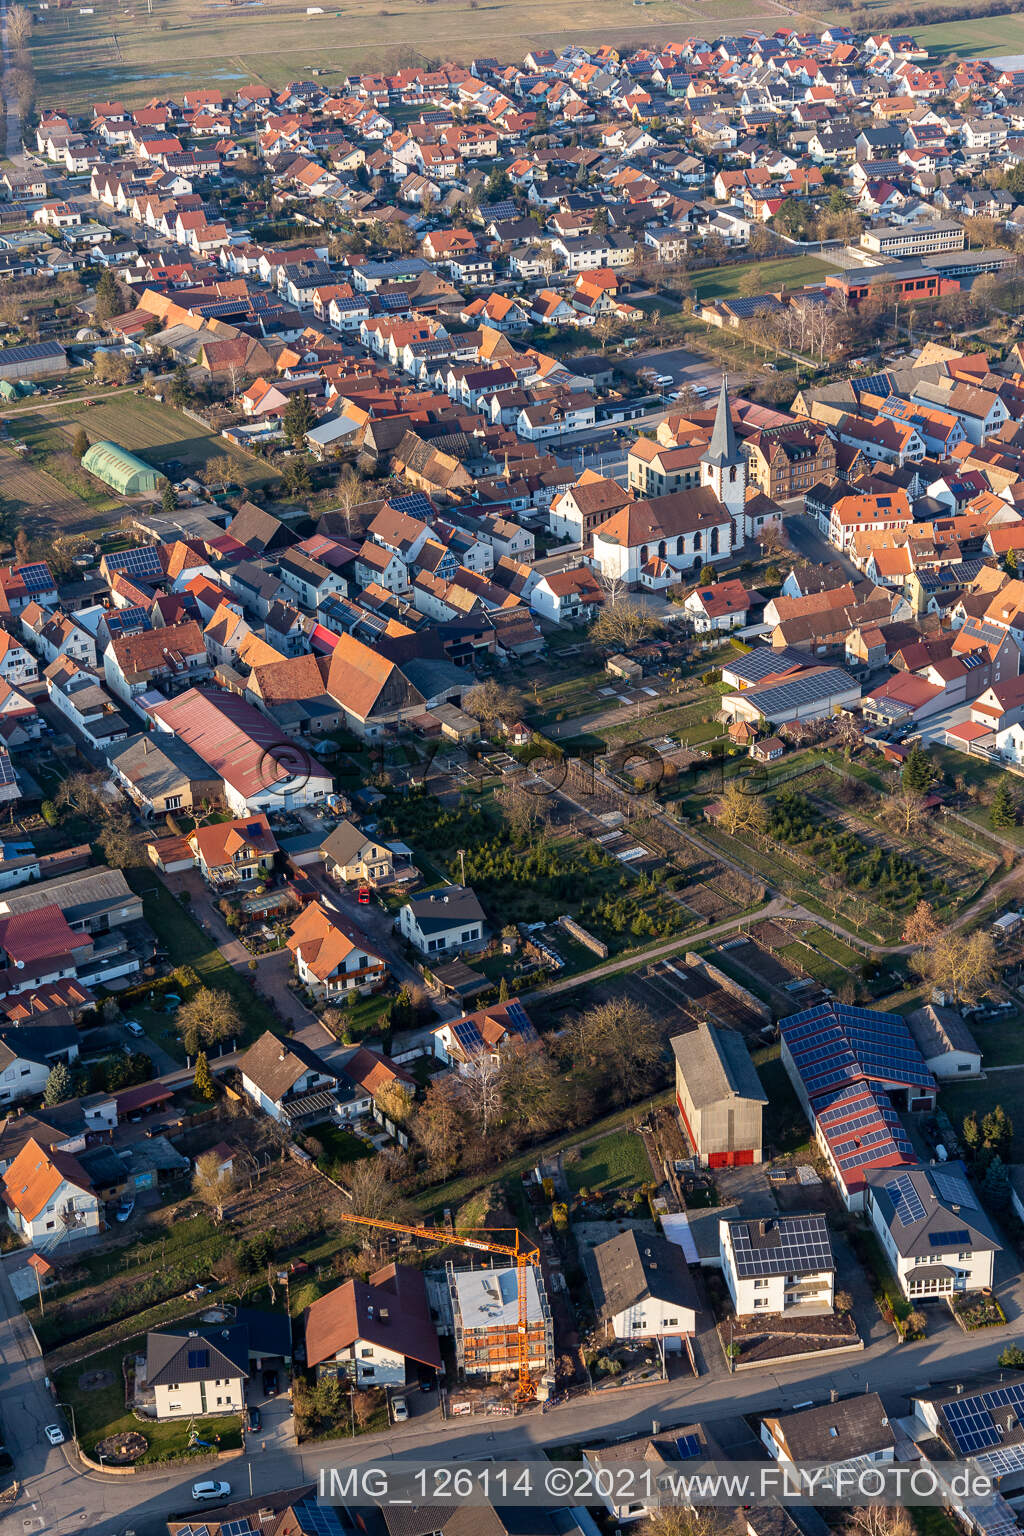 Vue aérienne de Bâtiment d'église au centre du village à Ottersheim bei Landau dans le département Rhénanie-Palatinat, Allemagne